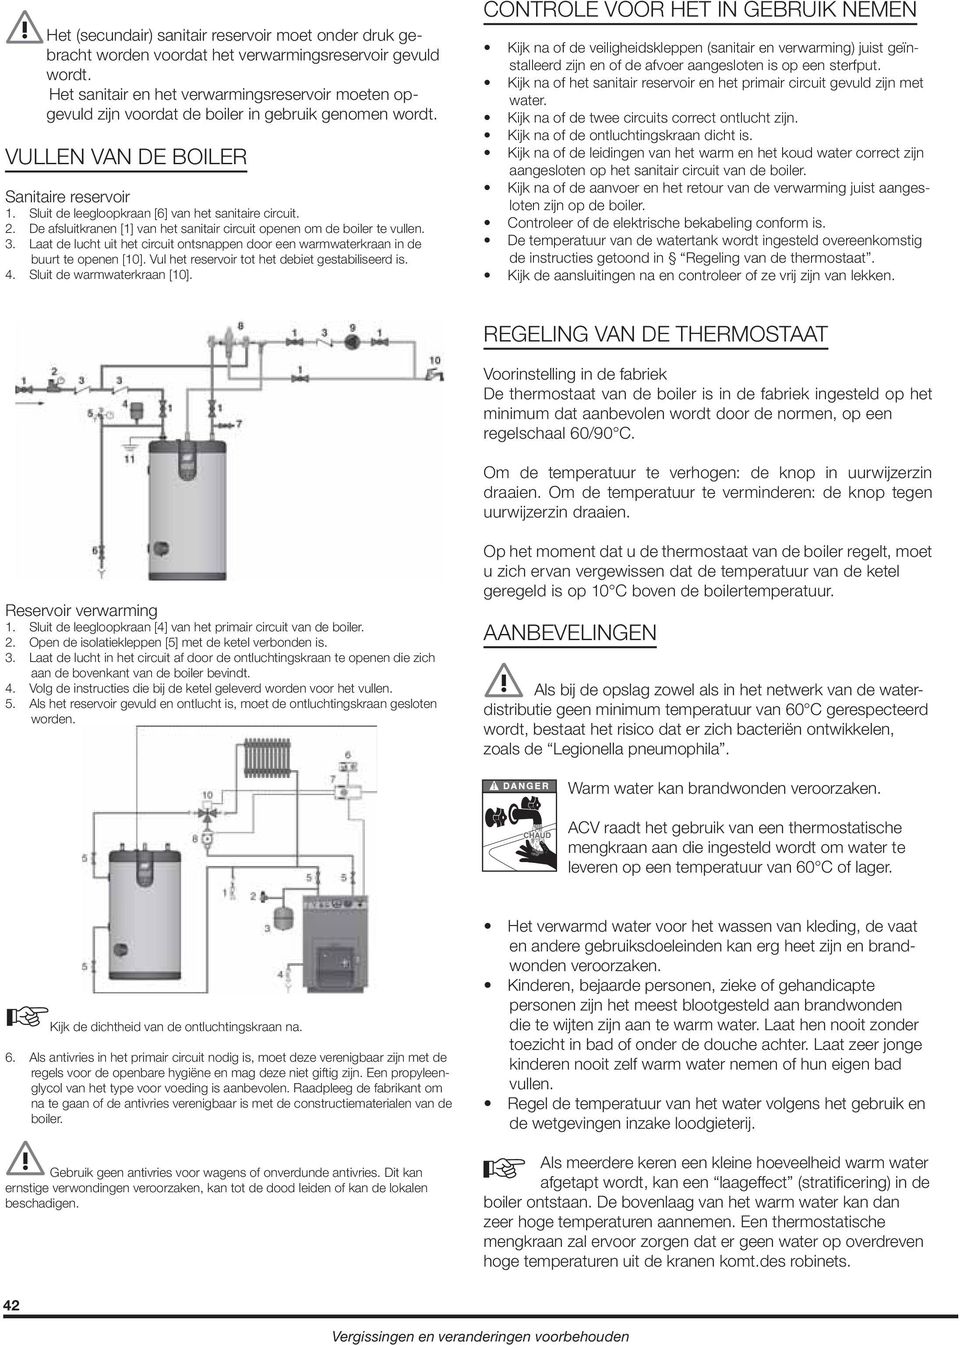 Sluit de leegloopkraan [] van het sanitaire circuit.. De afsluitkranen [1] van het sanitair circuit openen om de boiler te vullen. 3.